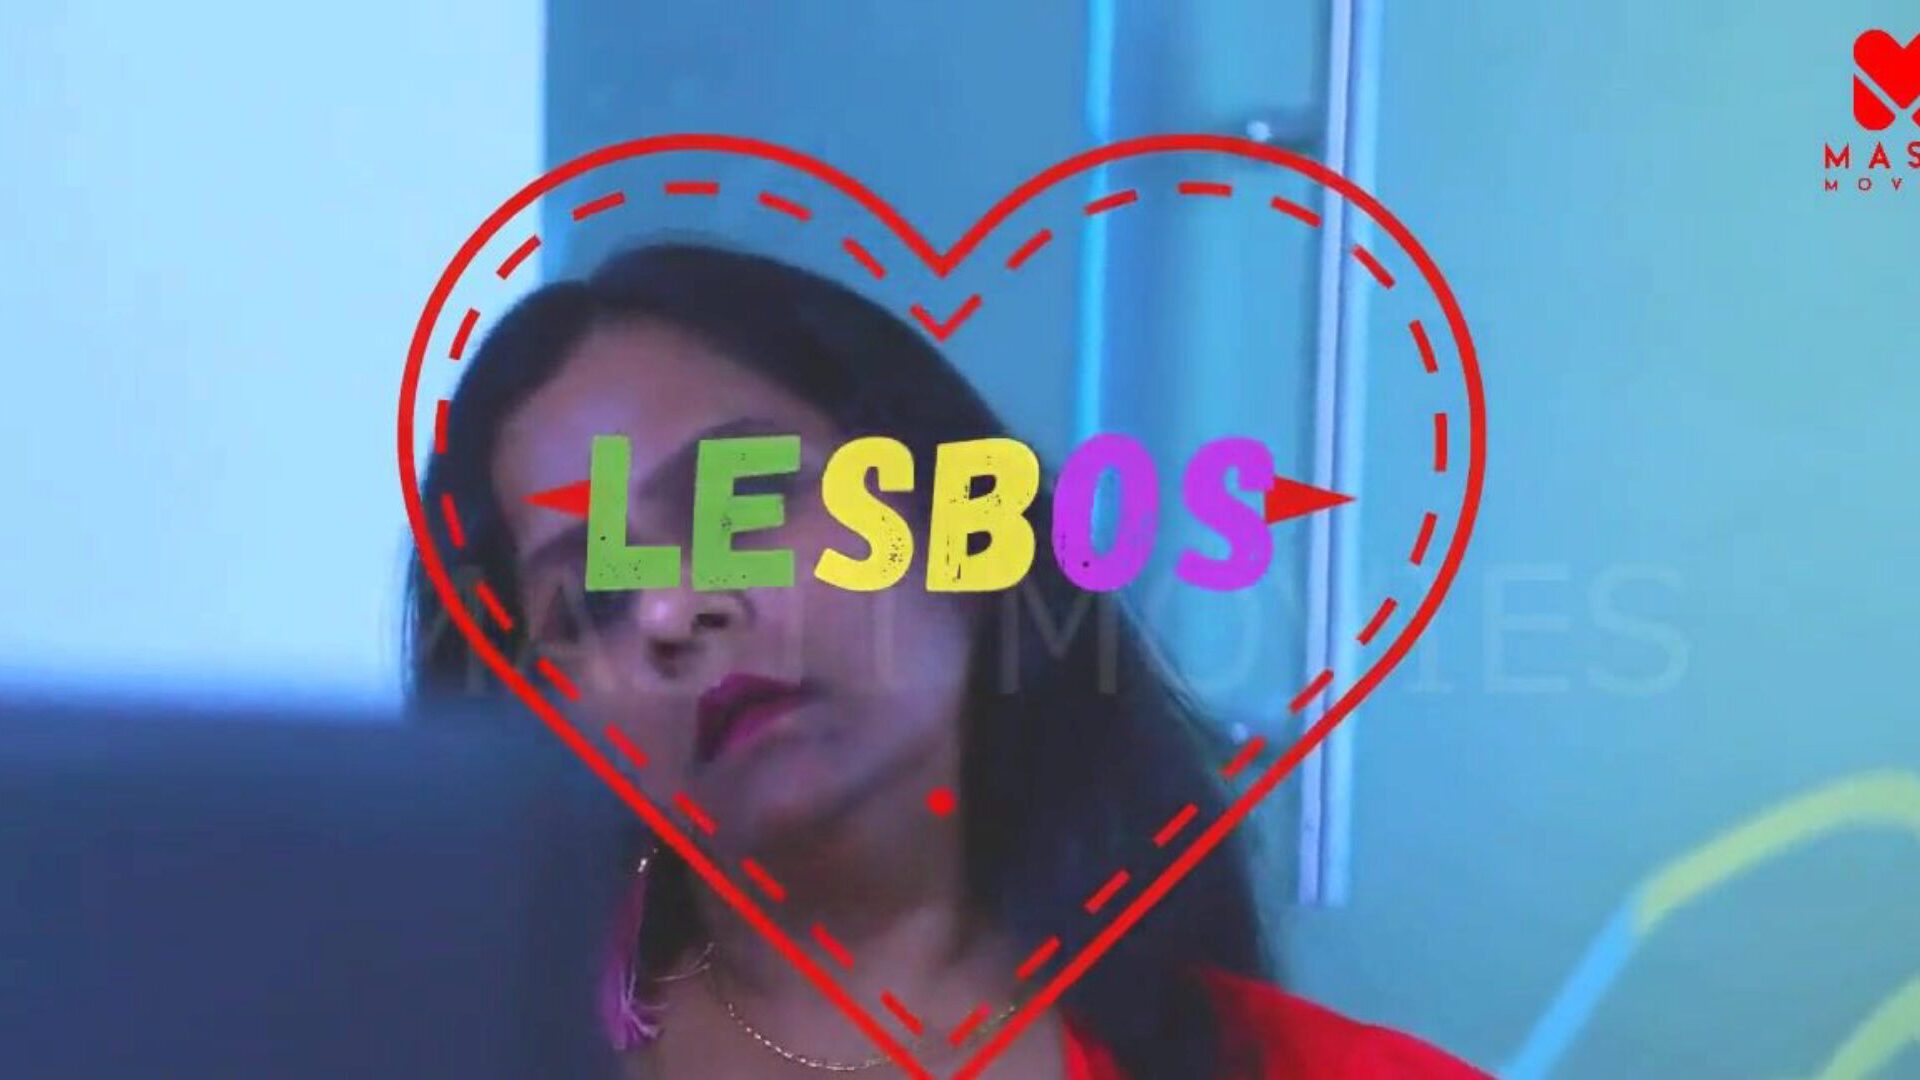 lesbos (2020) besorolás nélkül 720p hevc hdrip mastimovies kanada sf érett nagy mellű nagynénik forró leszbikus közösülés